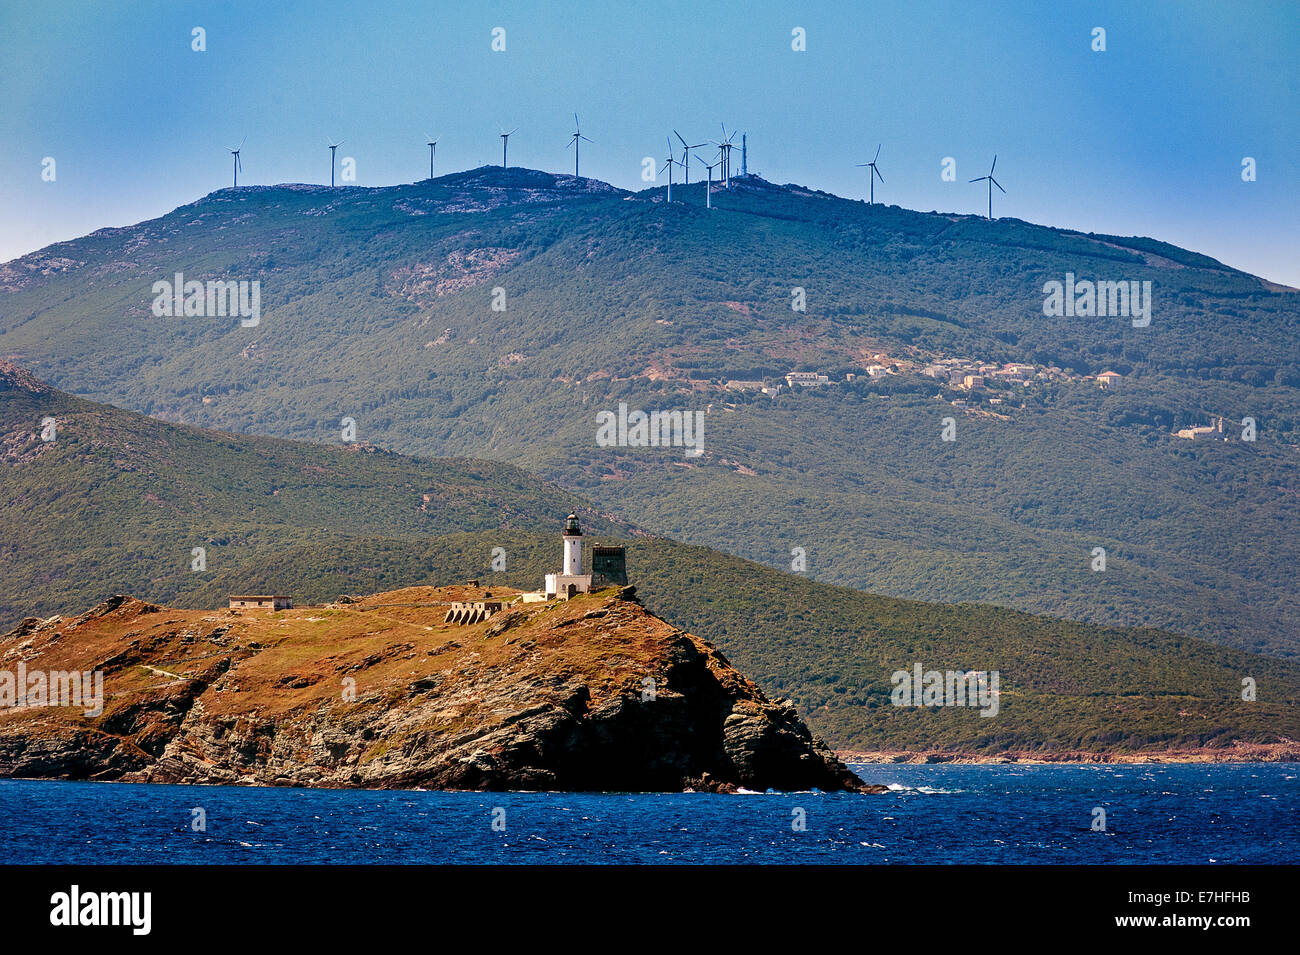 Europe, France, Haute-Corse, Cap Corse, Barcaggio. Giraglia island and its lighthouse. Stock Photo